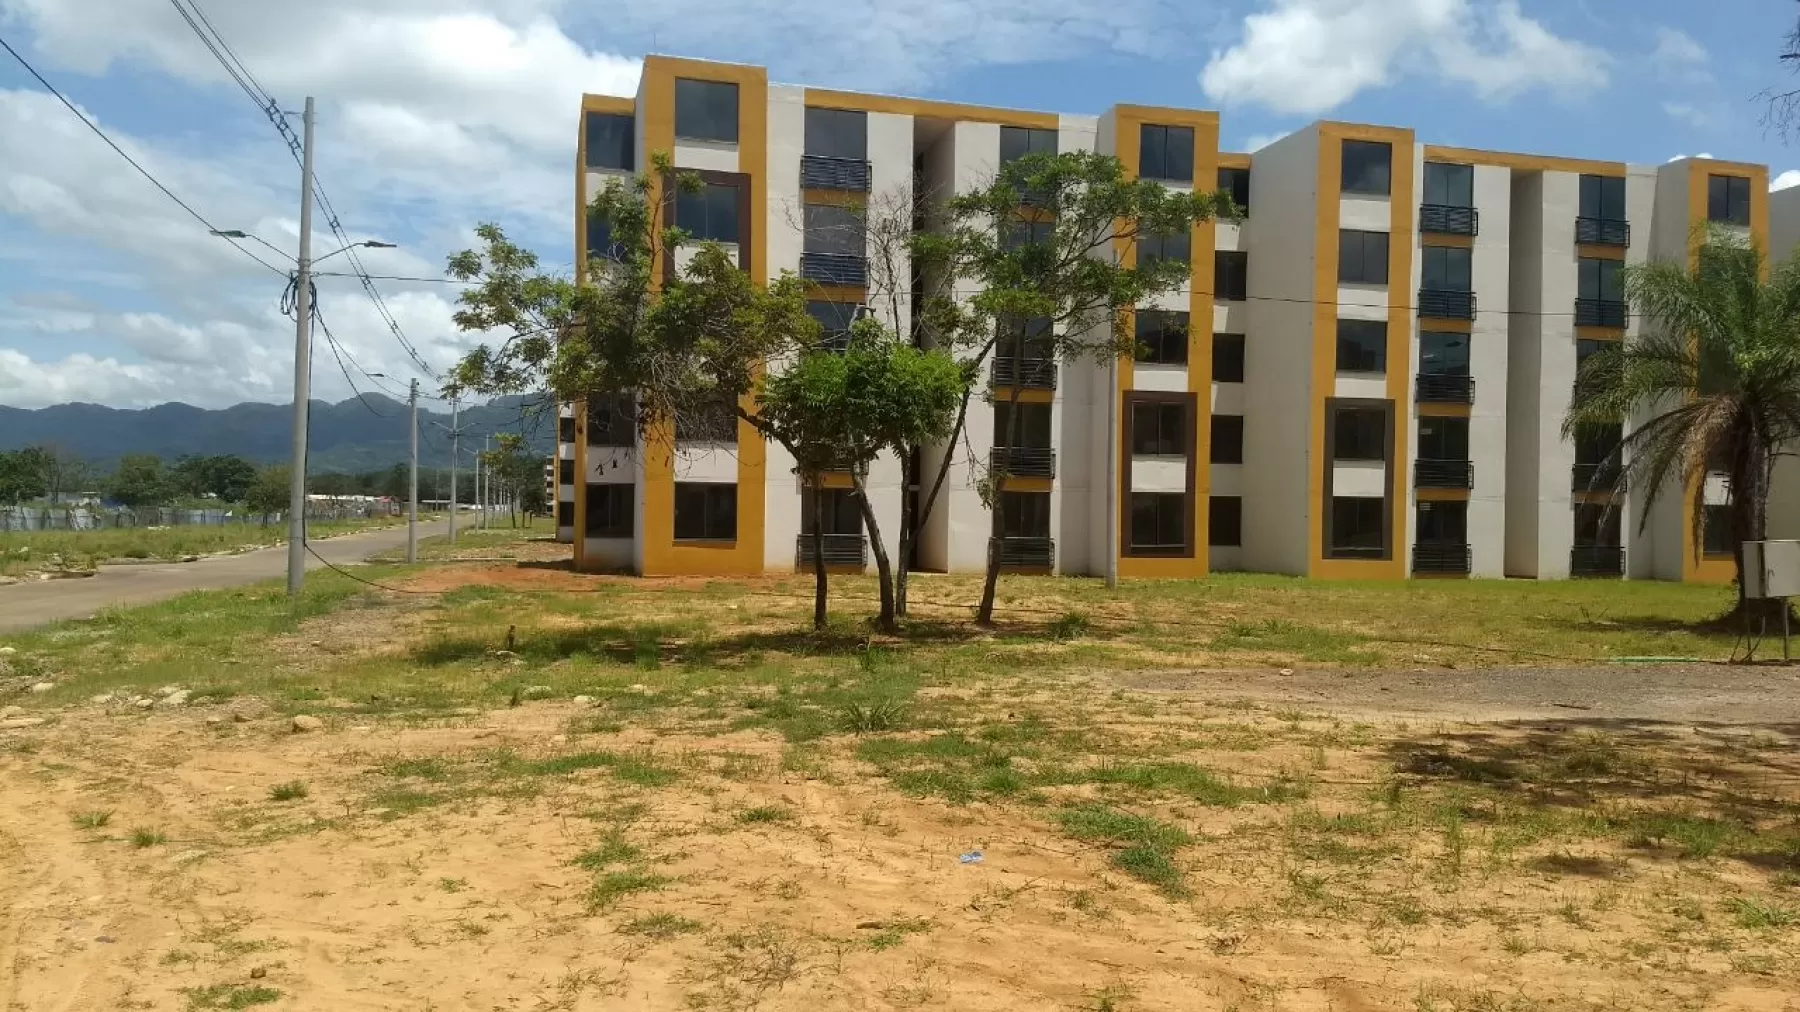 Entrega definitiva de los apartamentos del proyecto de vivienda Torres de San Marcos de Yopal, Casanare a 60 familias.